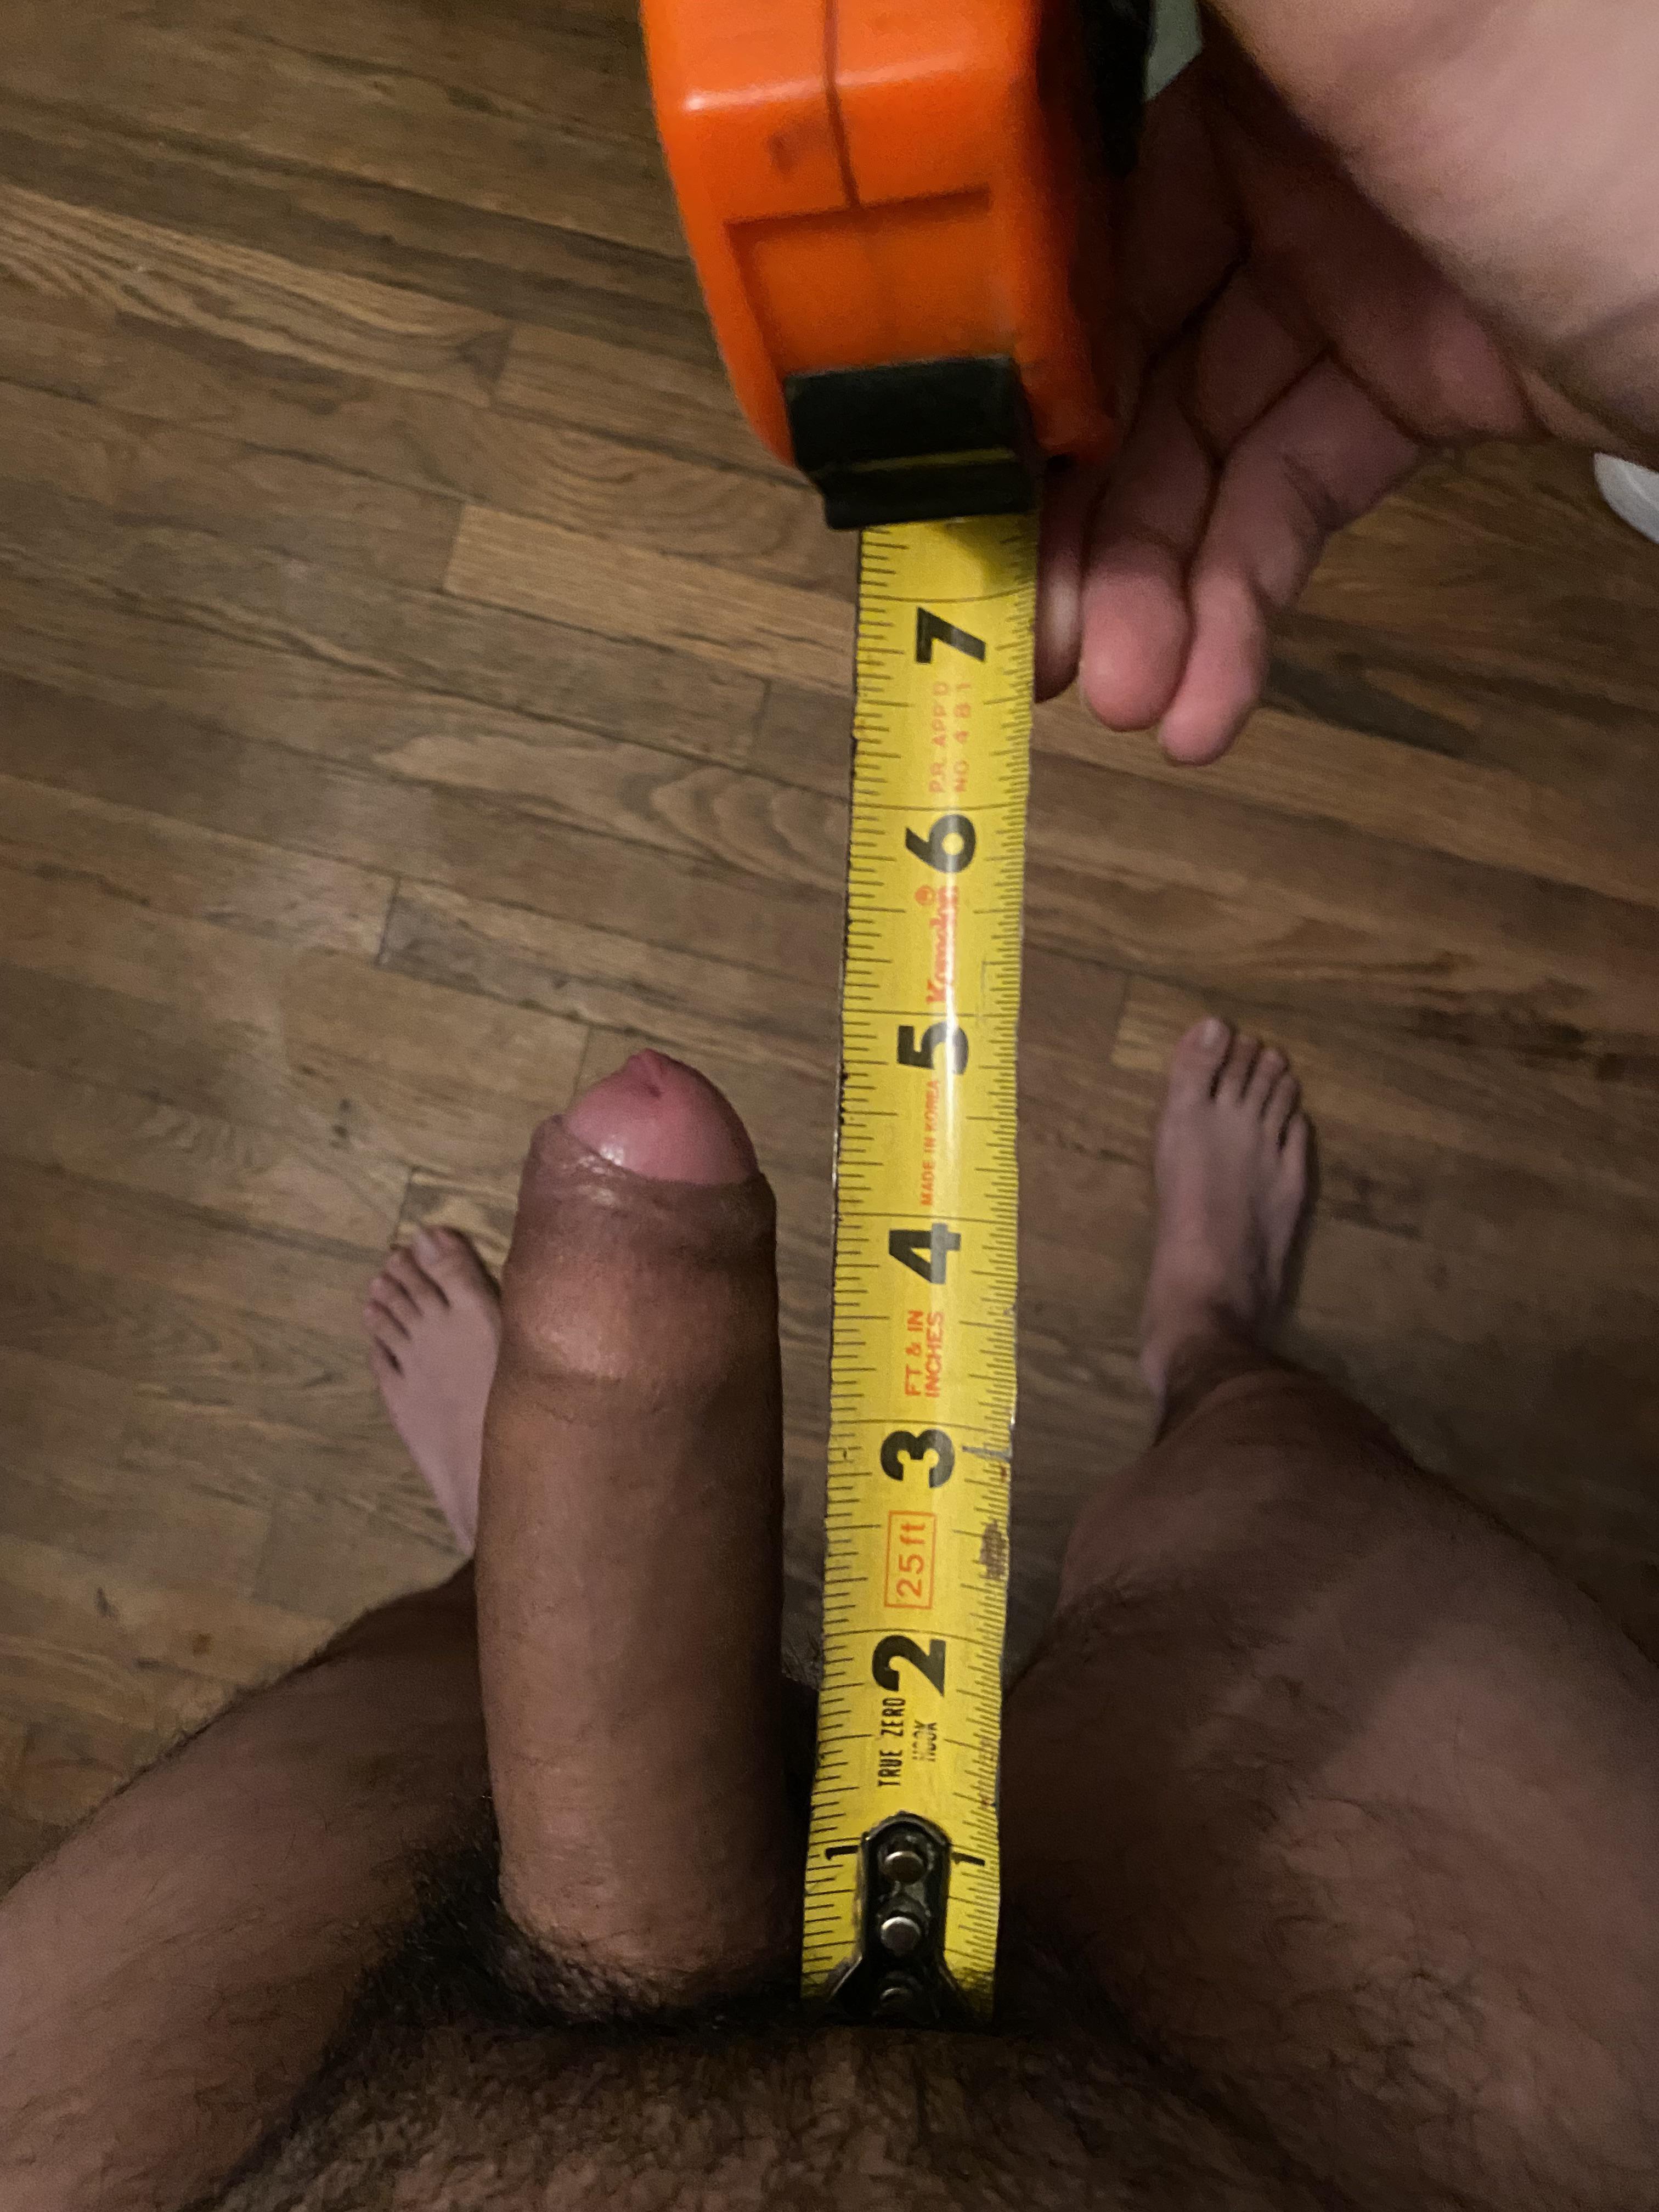 Measuring small dicks